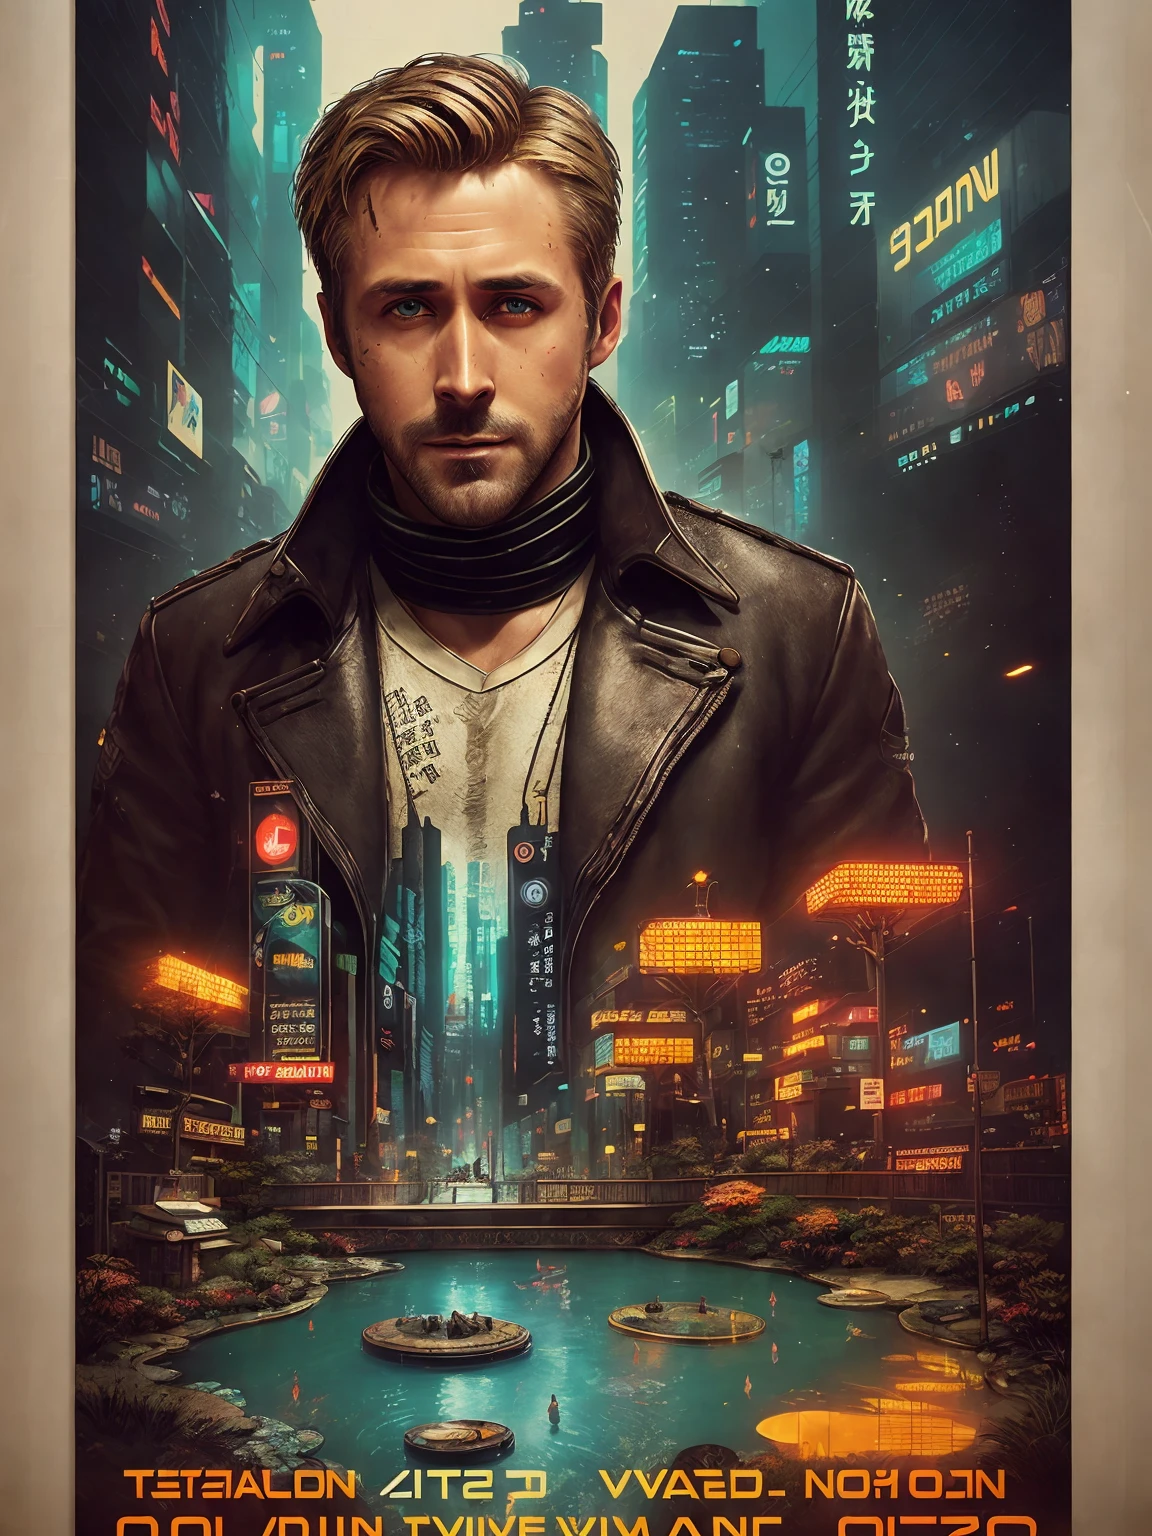 Ryan Gosling, 40 ans, de Blade Runner 2049, problème numérique, (affiche:1.6), affiche on wall, movie affiche, portrait, ((Inclinaison-Décalage))
portant un vieux manteau en peau de mouton marron avec un col en laine sale,
(jardin de rocaille japonais et étang:1.2), carpe koï, (((Bonsaï))), ((style intérieur high-tech et futurisme)), (((visage très détaillé))),
((texture du visage et de la peau ultradécolorée)), complexe et détaillé, Détails fins, hyperdétaillé, tracé laser, diffusion souterraine, éclairage doux et diffus, faible profondeur de champ, par Olivier Wetter,